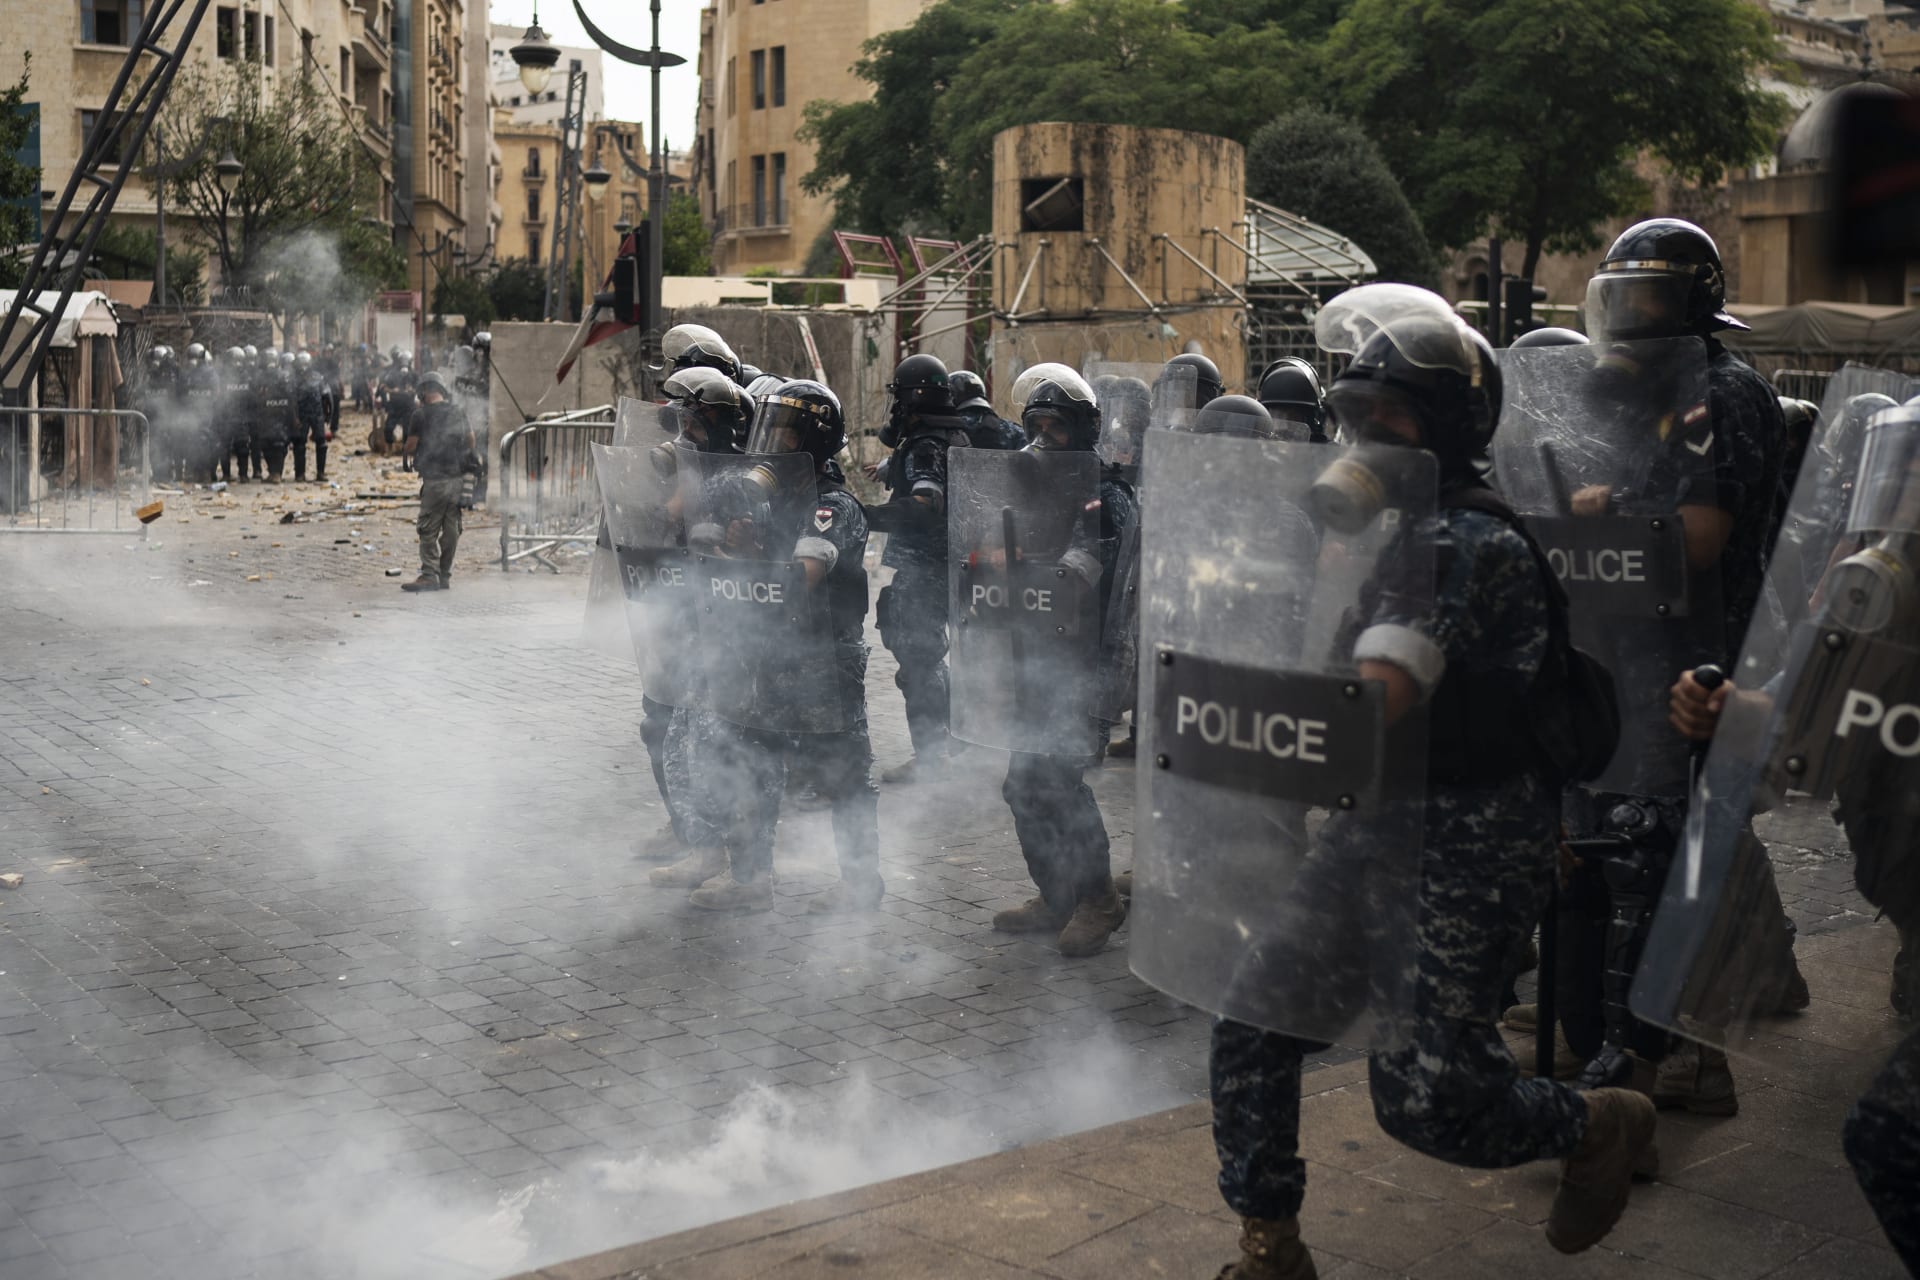 Sobotní demonstrace v Bejrútu navazuje na protesty, které se v Libanonu konají už od loňského podzimu. Foto: AP